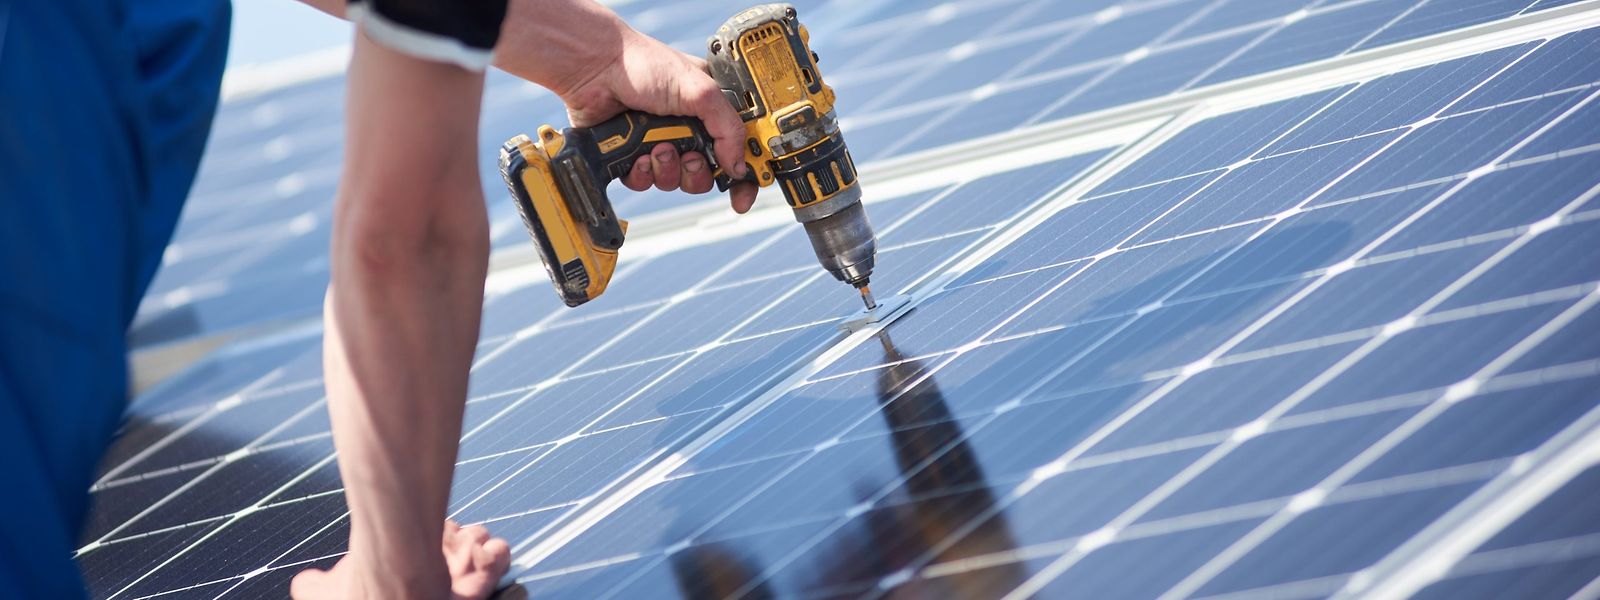 En 2020, 609 installations photovoltaïques ont eu lieu au Luxembourg, selon le ministère de l'Energie. Un chiffre que Claude Turmes aimerait voir grandir d'ici 2030.